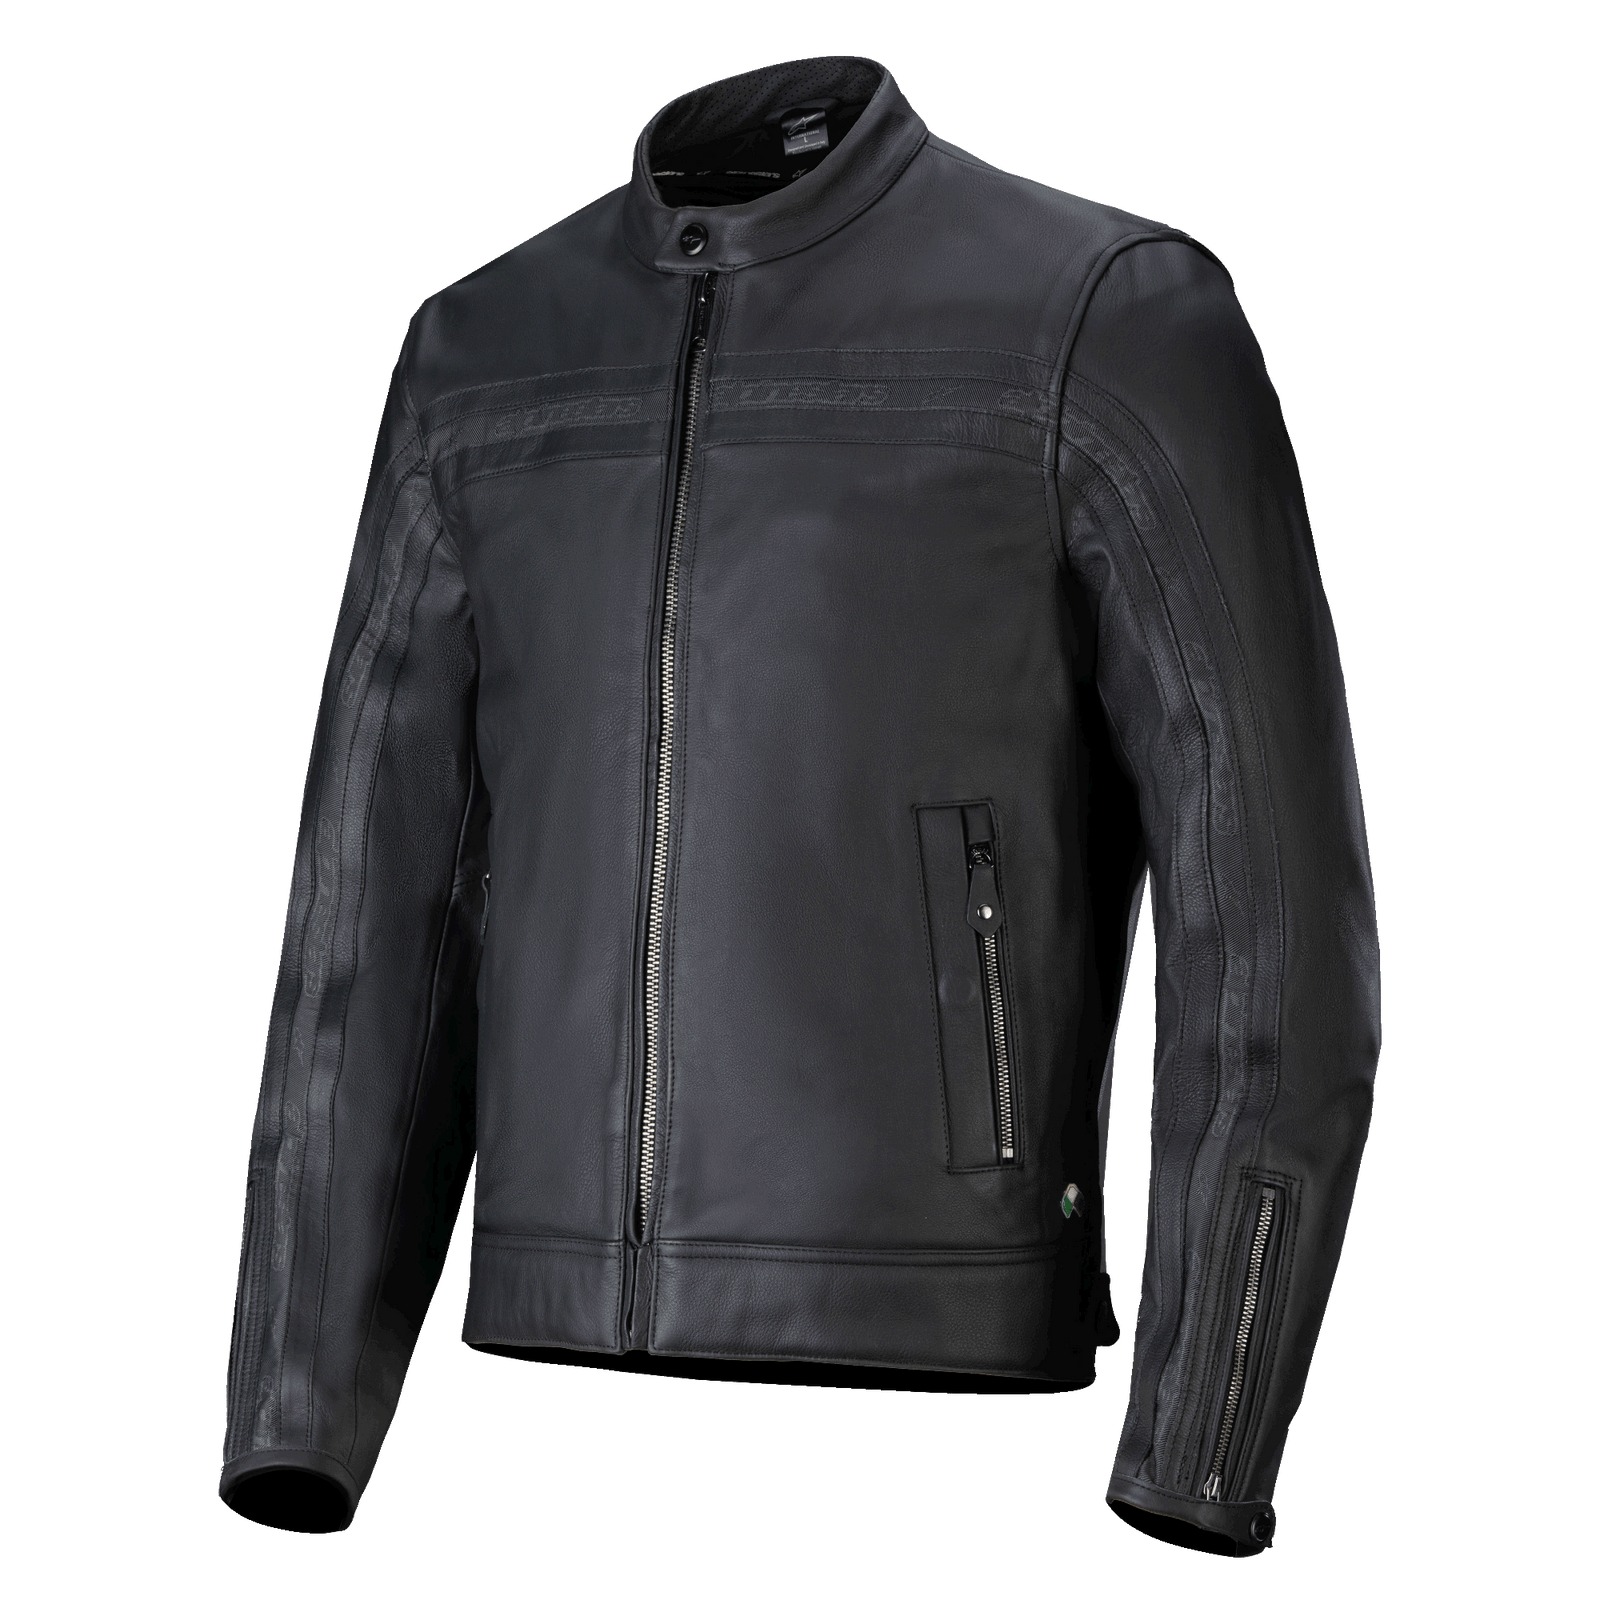 Dyno Leather Chaqueta